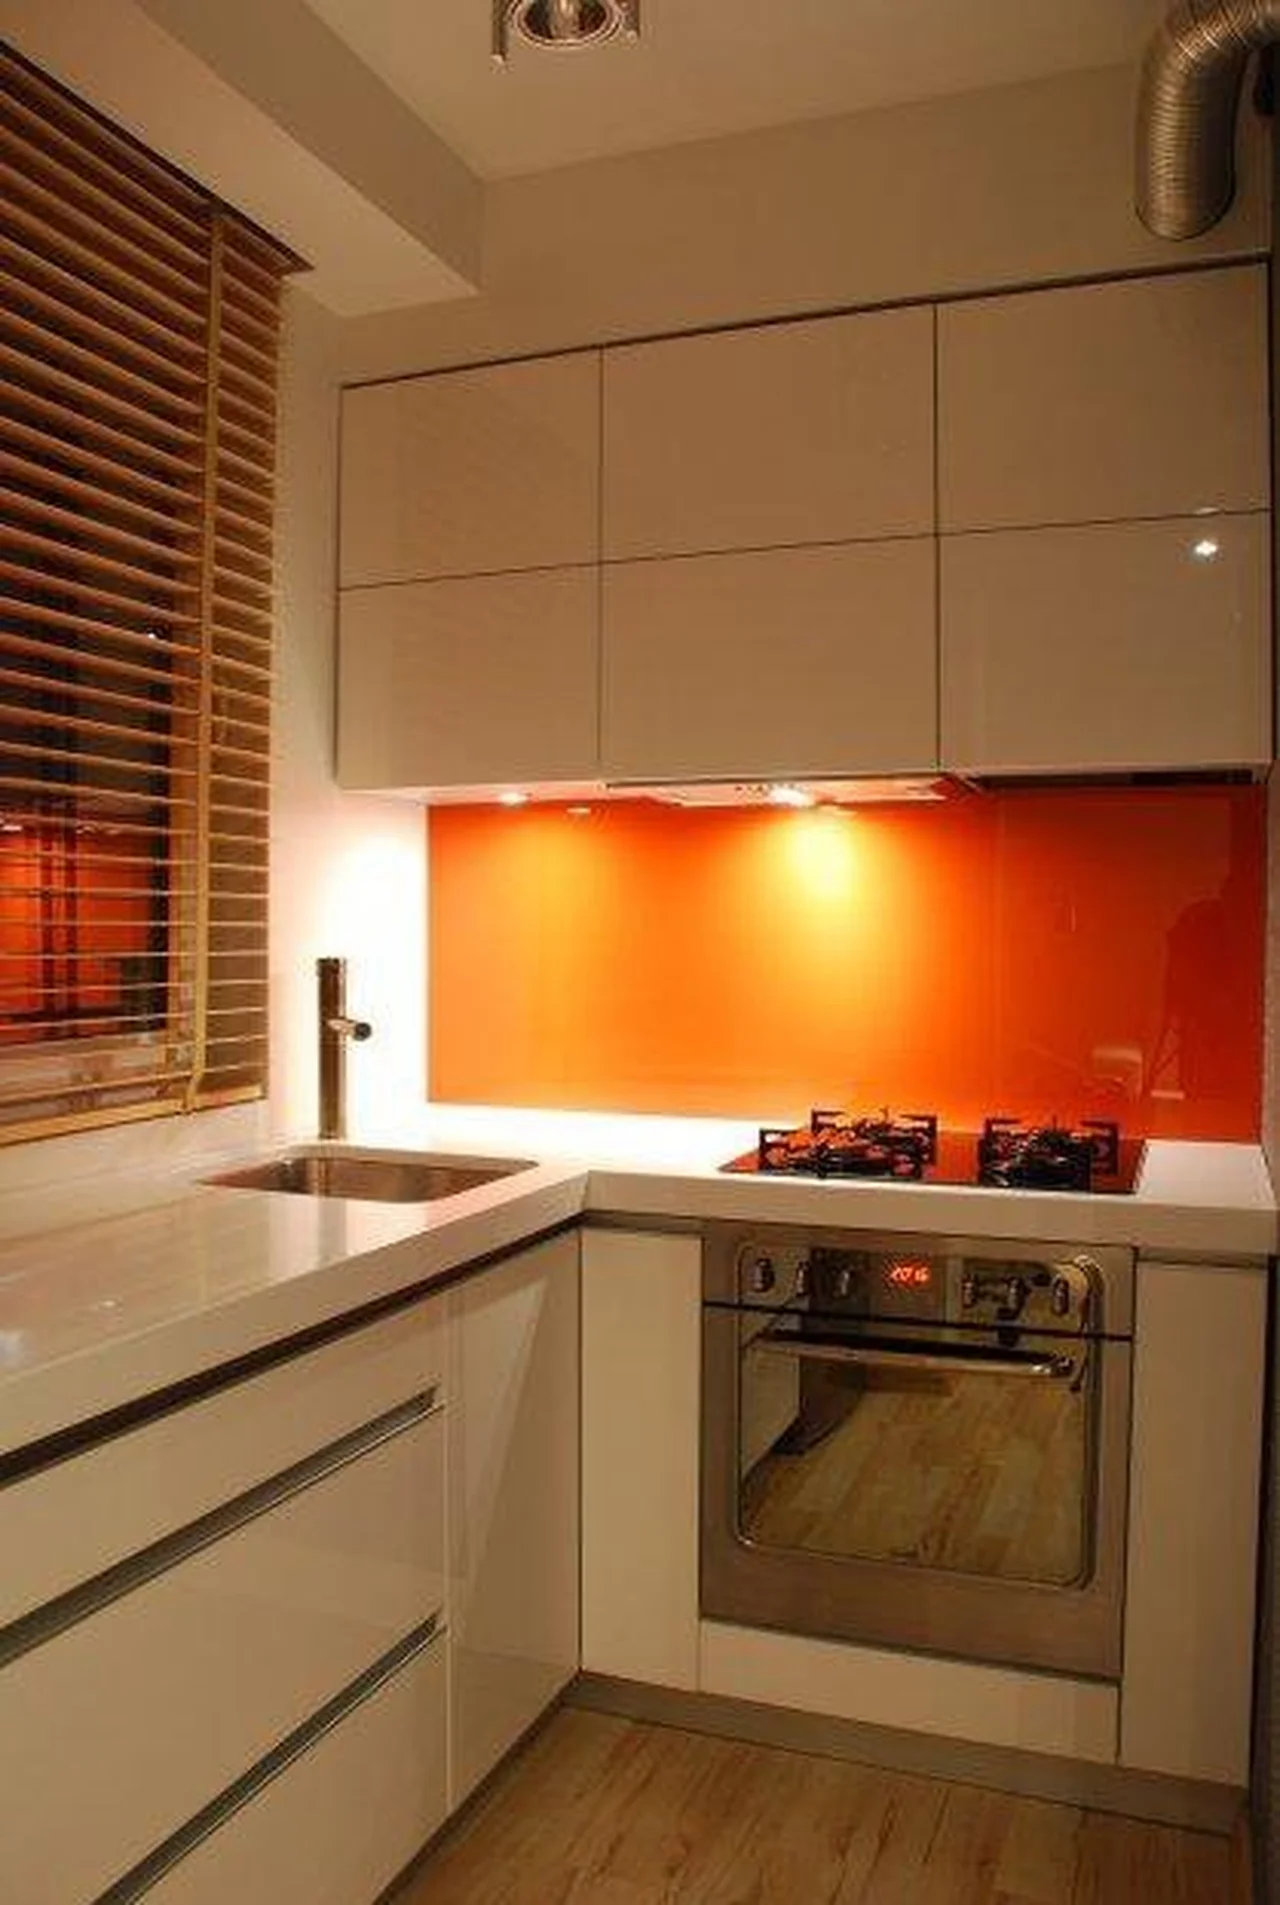 Pomarańczowa pleksa w kuchni